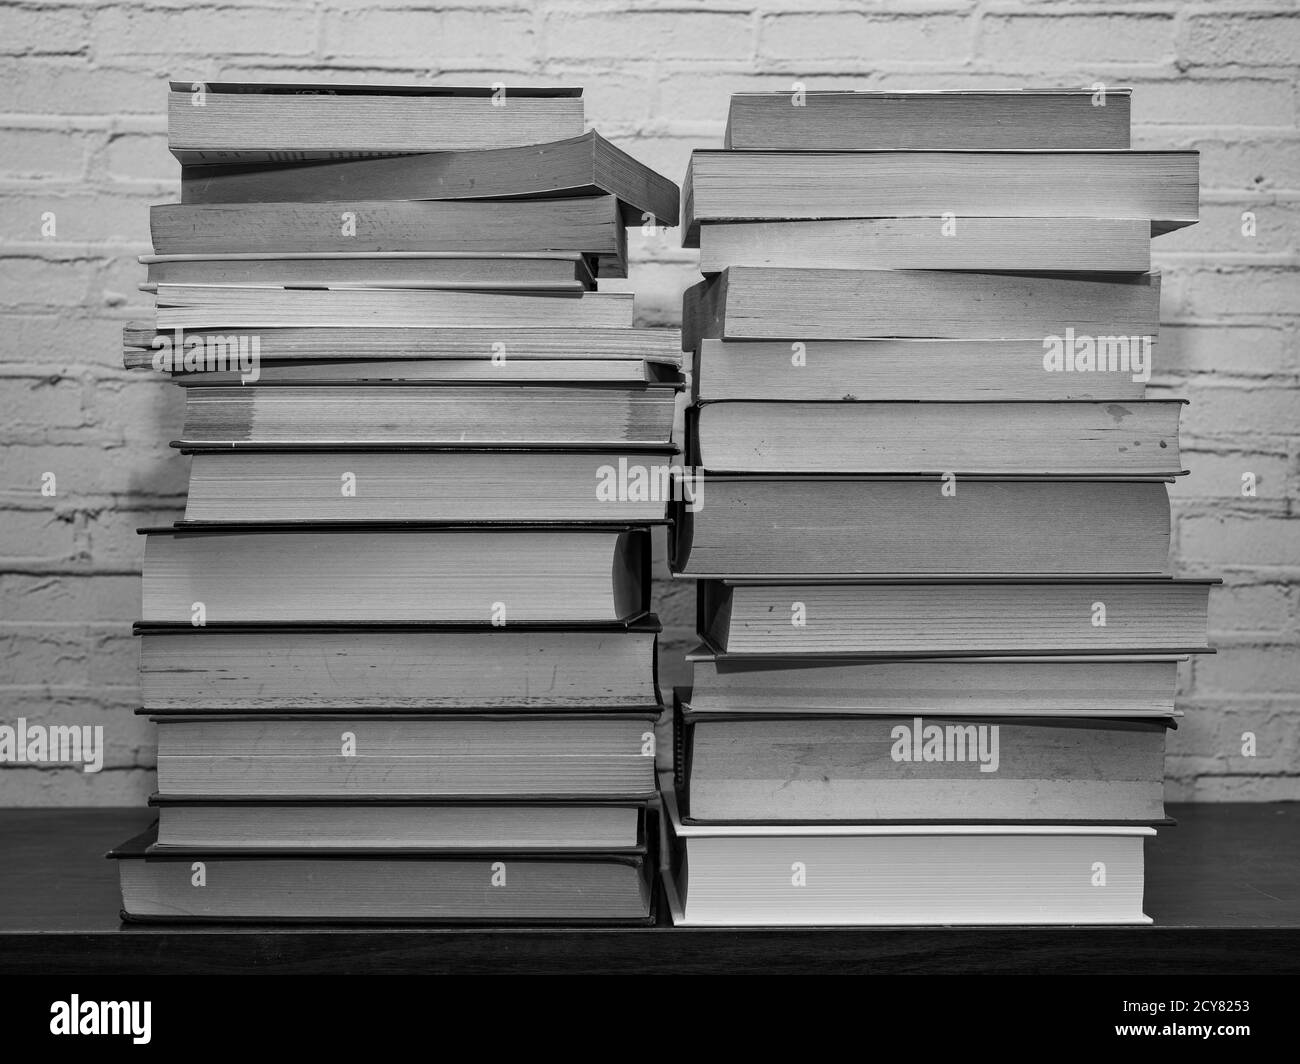 Immagine in bianco e nero di alcuni libri impilati su uno scaffale, sfondo in mattoni chiari Foto Stock